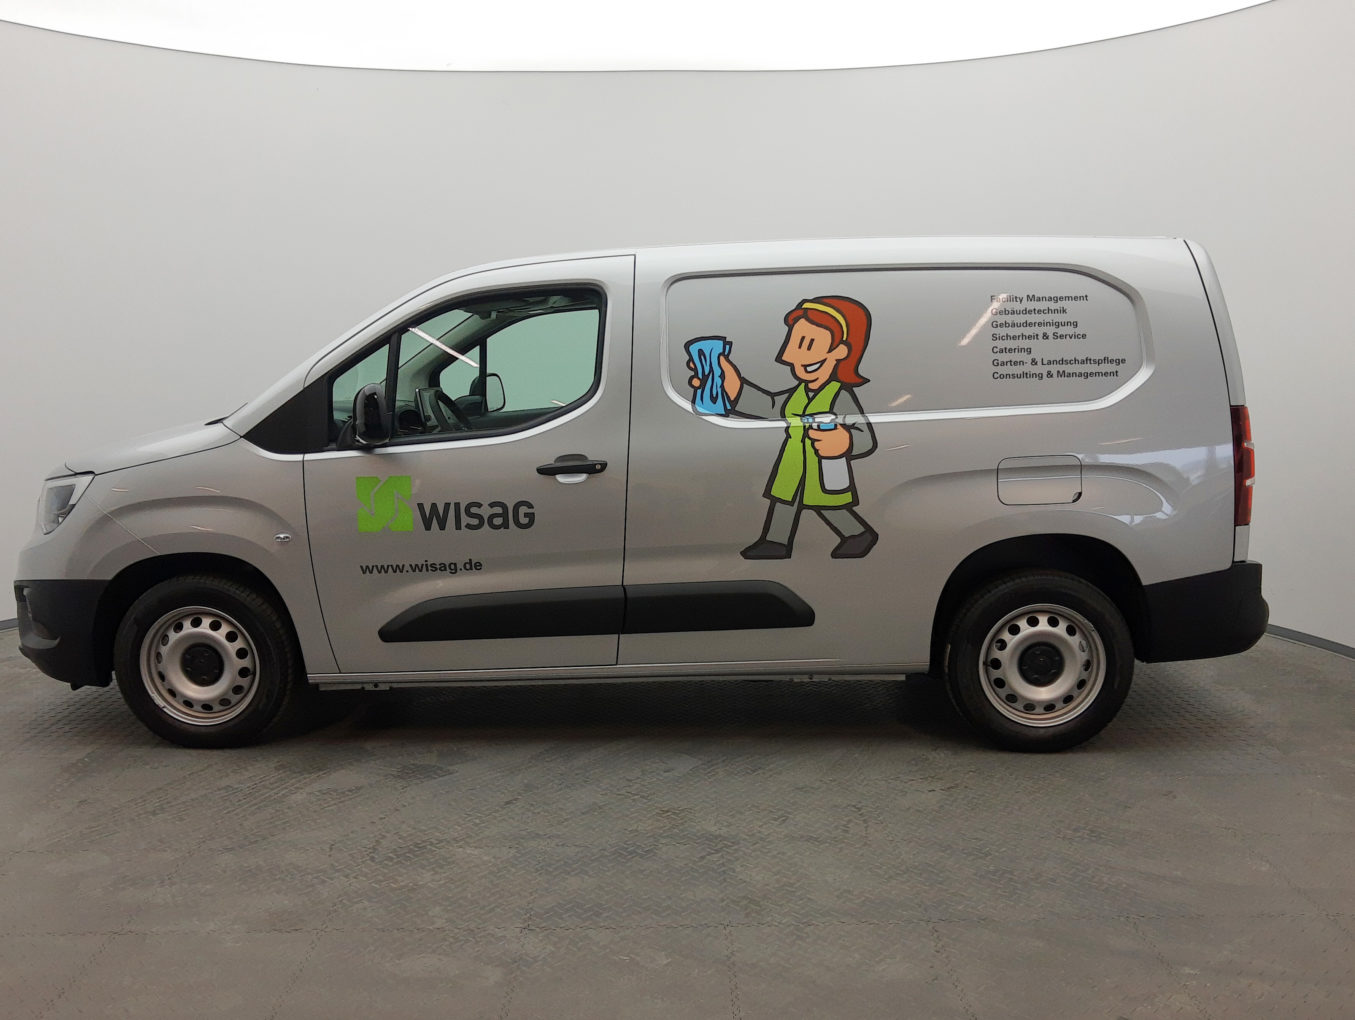 WISAG – Ein langjähriger Partner von SIGNal Design